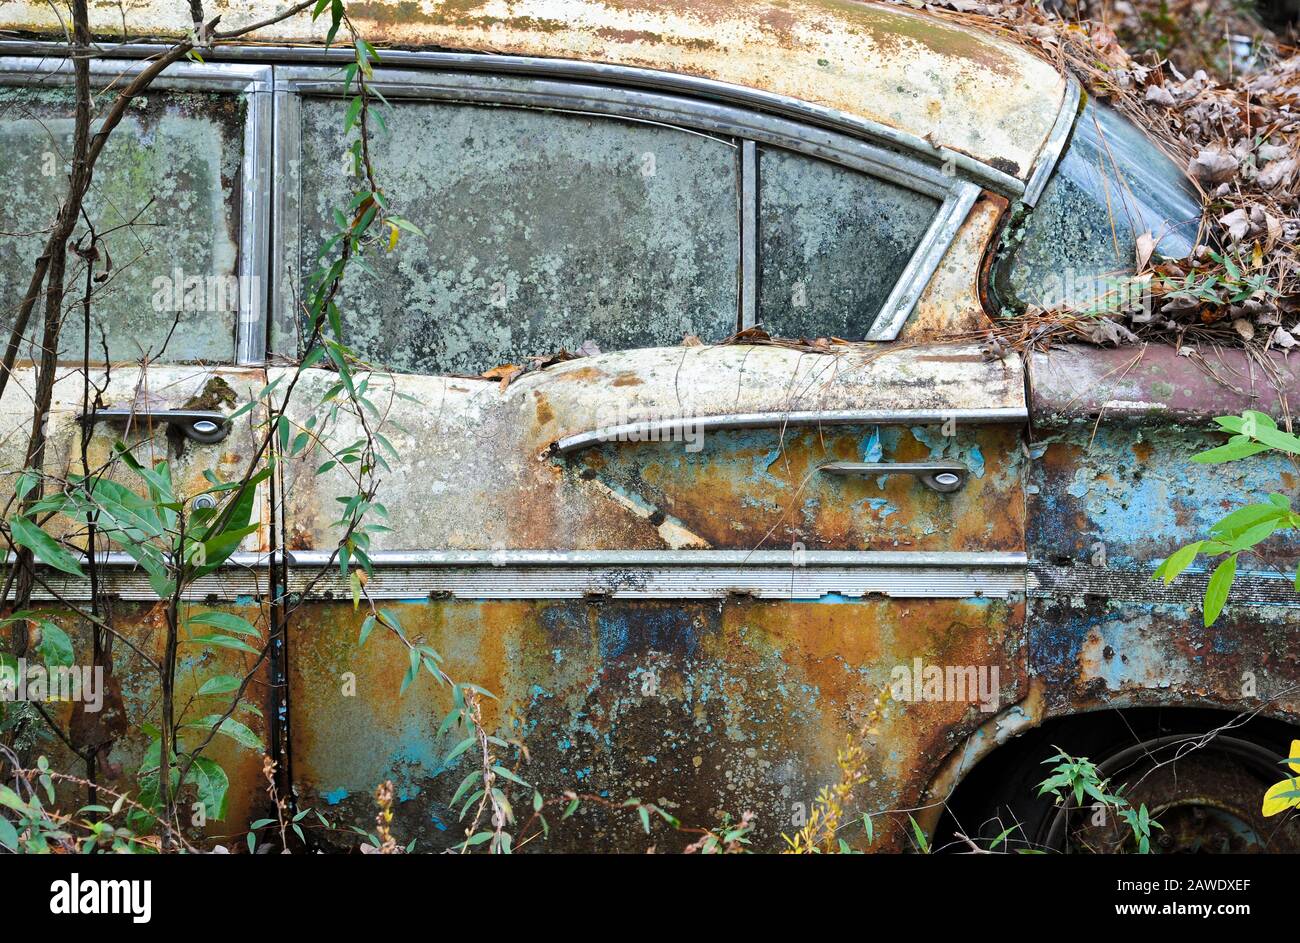 Una vecchia auto arrugginita rottamazione che è stato abbandonato nei boschi Foto Stock